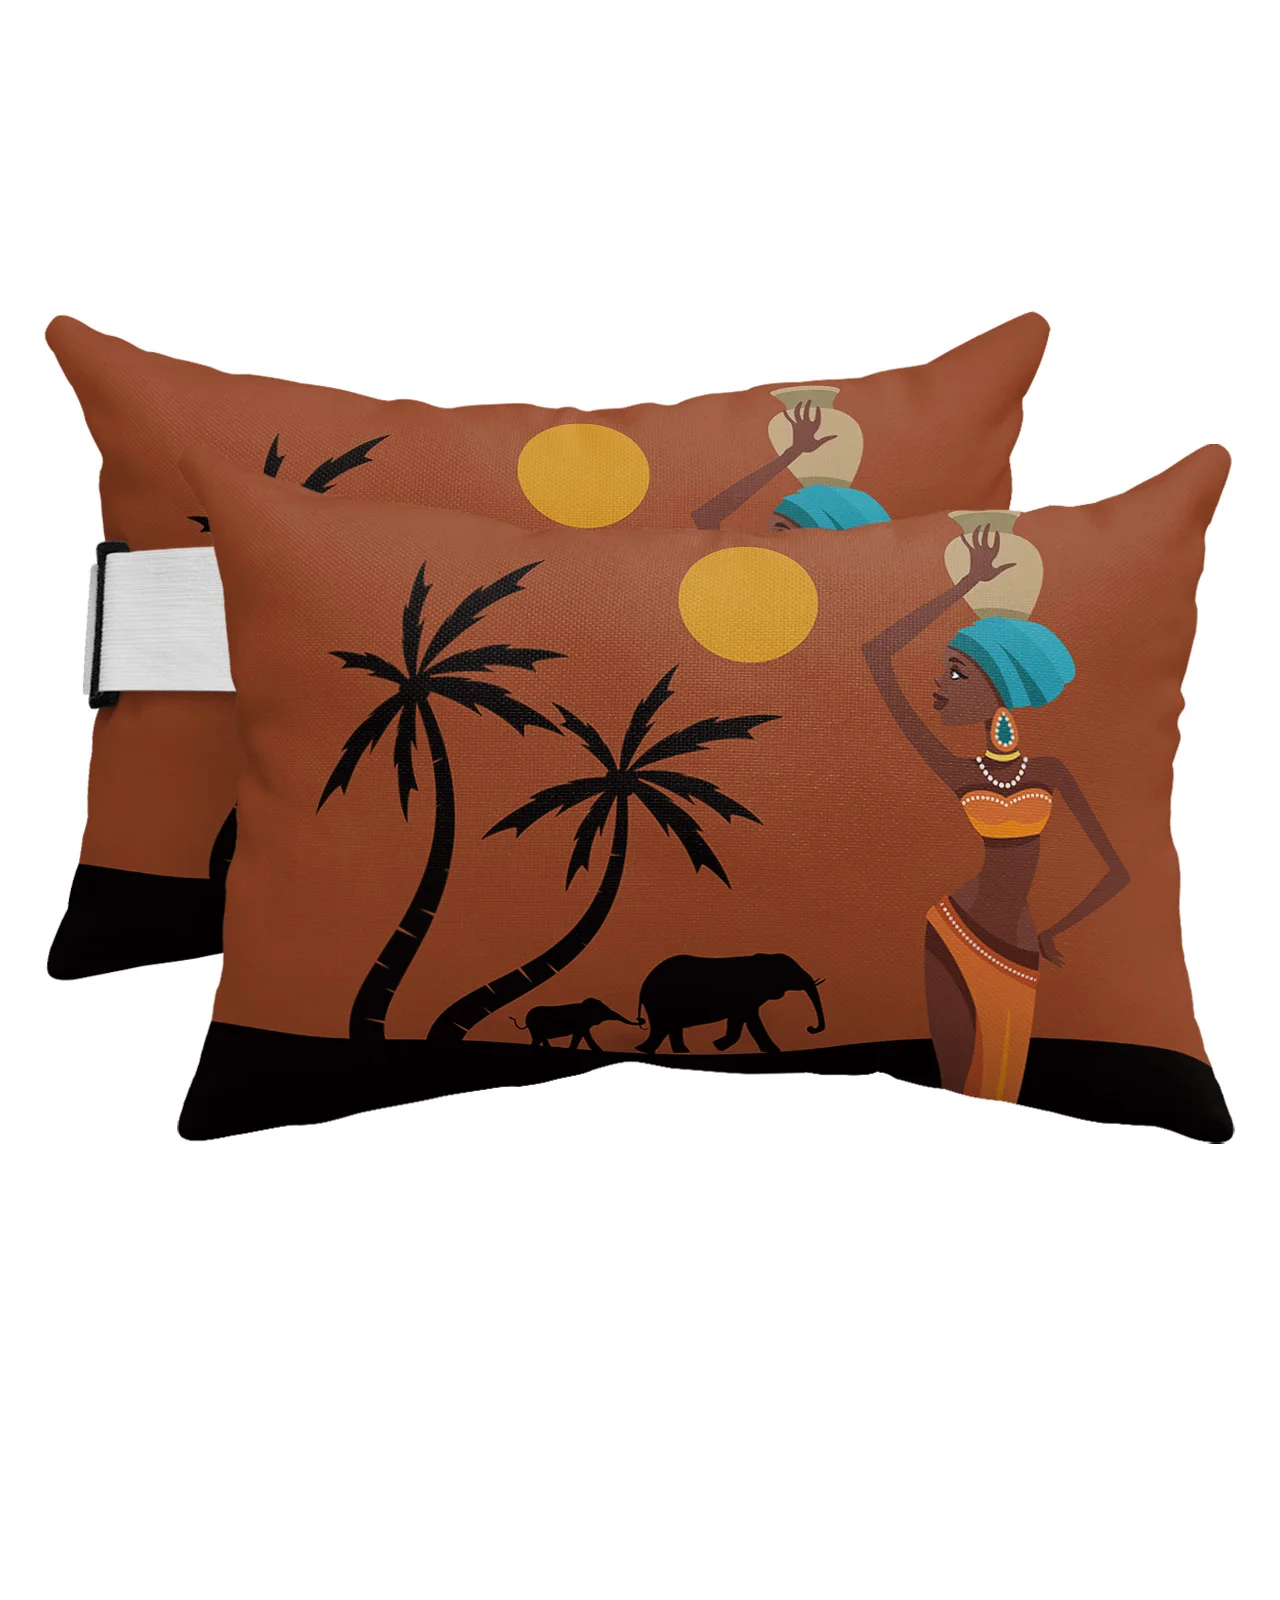 

African Women Sunset Landscape Elephant Waterproof Pillow With Insert Adjustable Lounge Chair Recliner Head Lumbar Travel Pillow